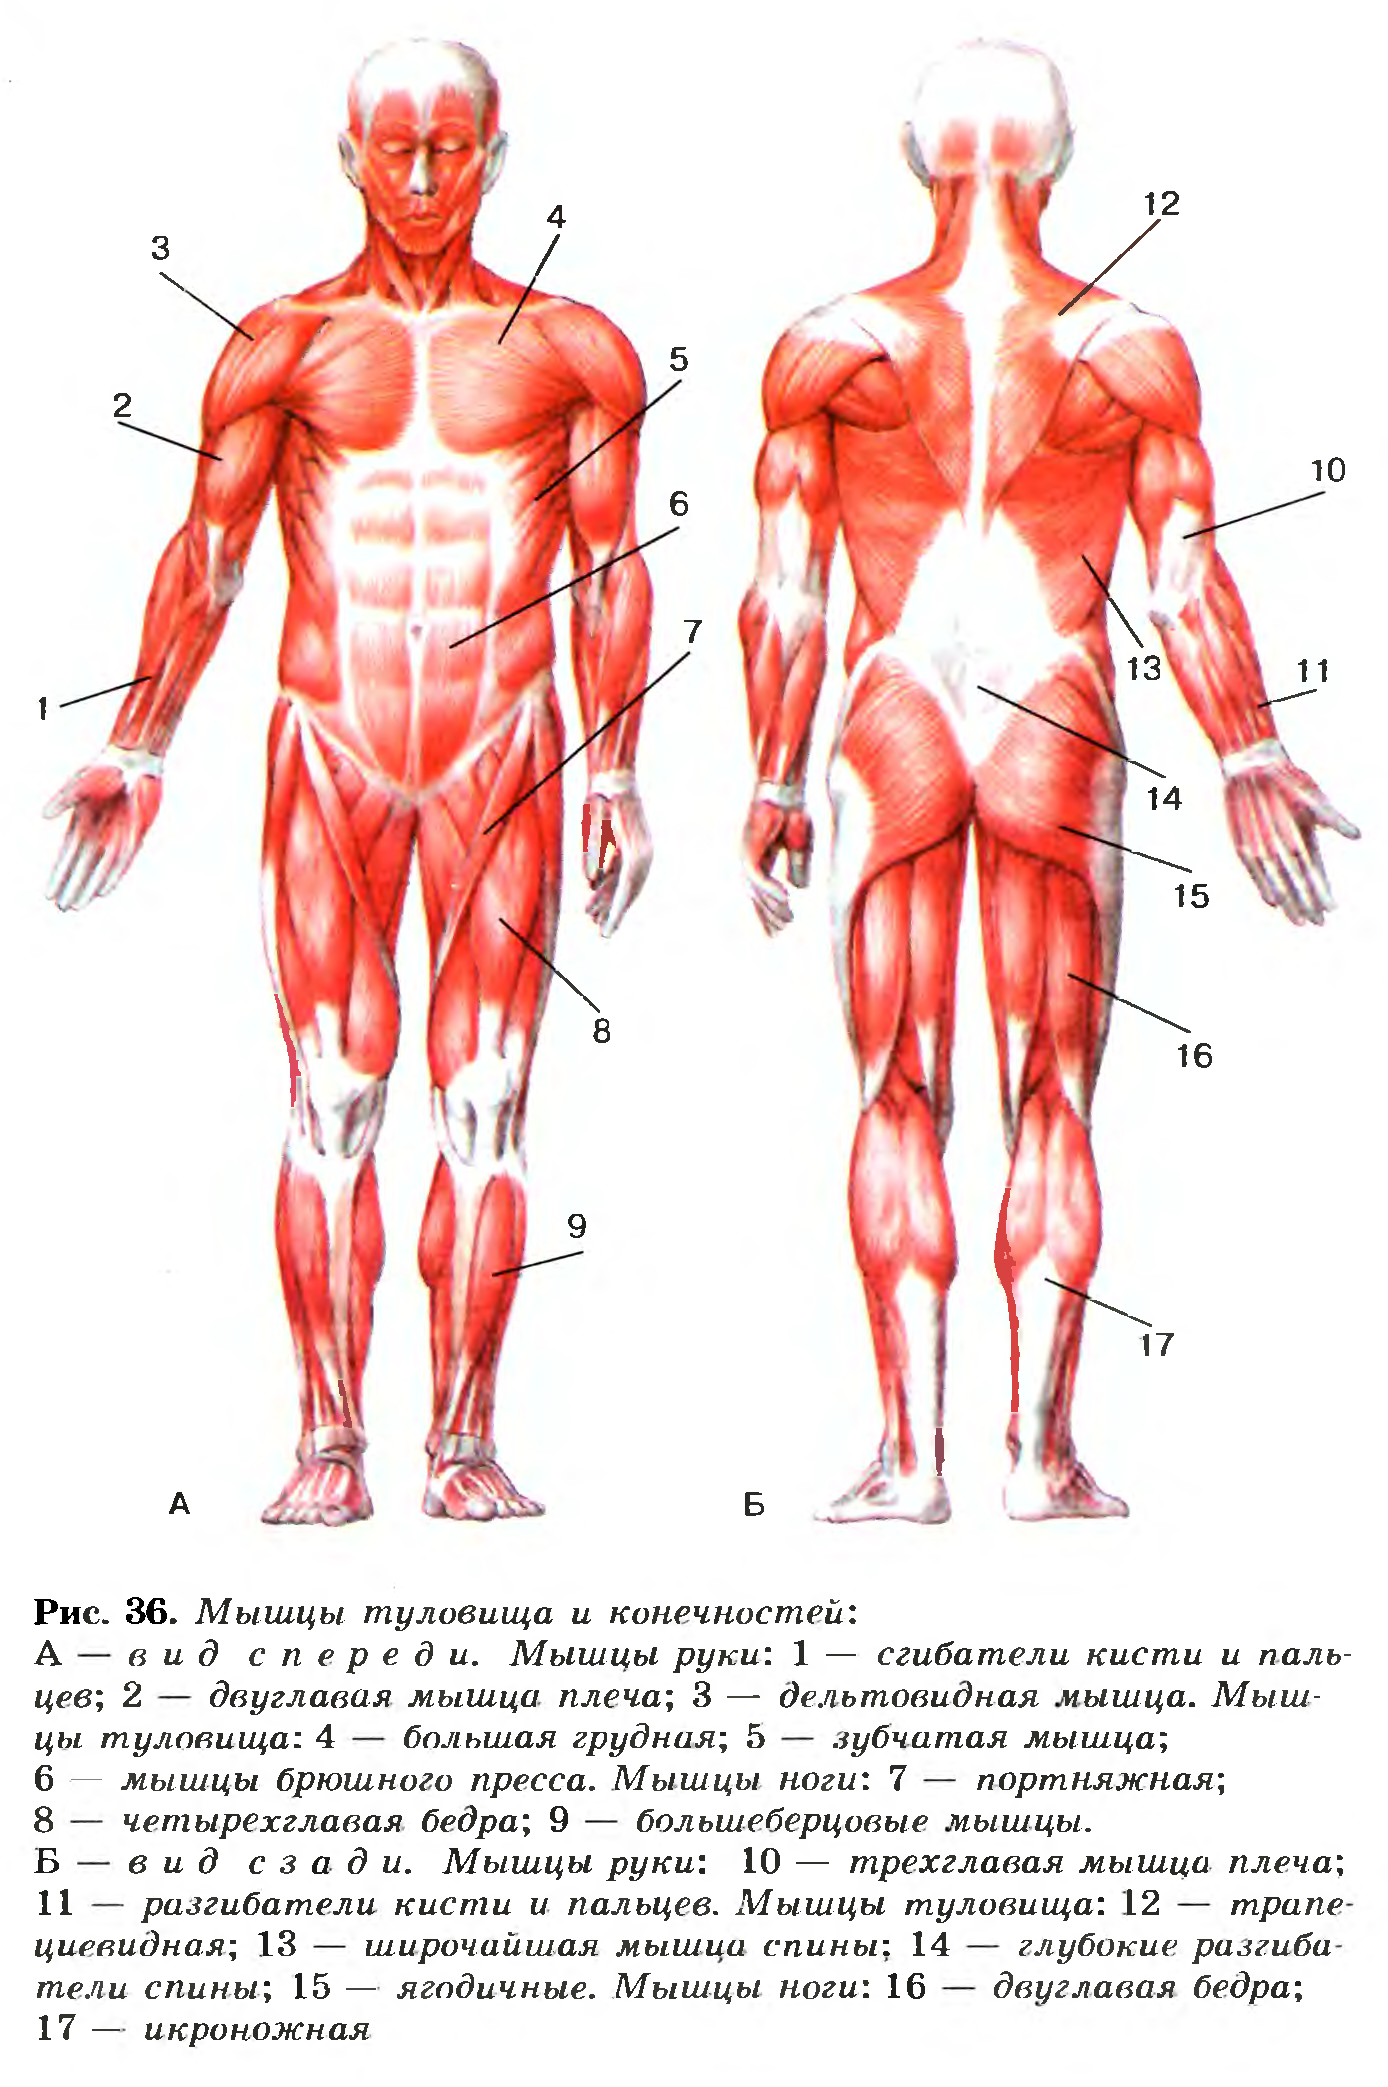 Какая мышца изображена на рисунке. Строение мышц туловища и конечностей человека.